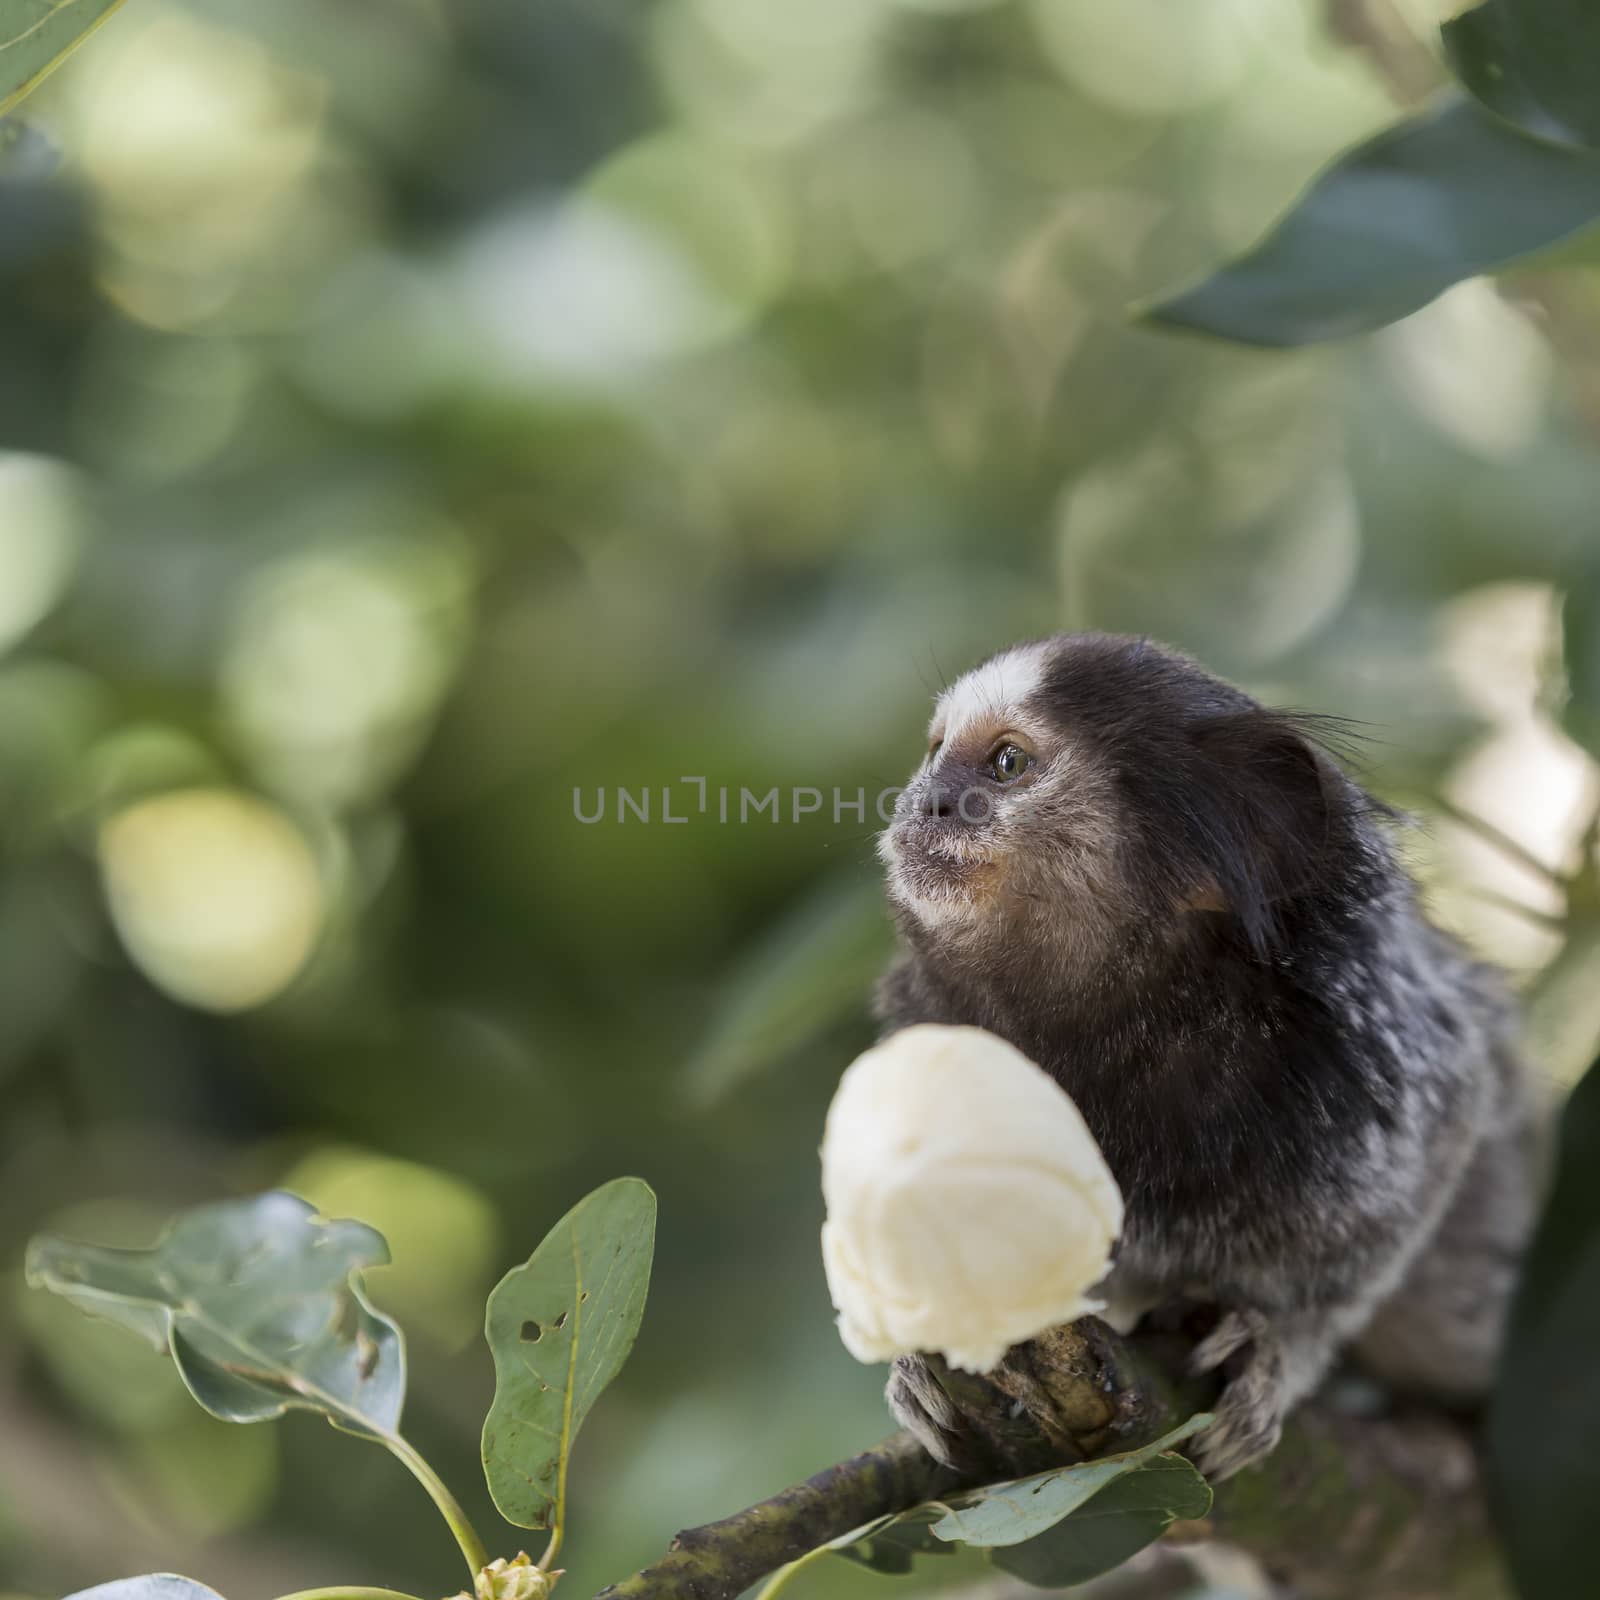 Marmoset monkey eating a banana